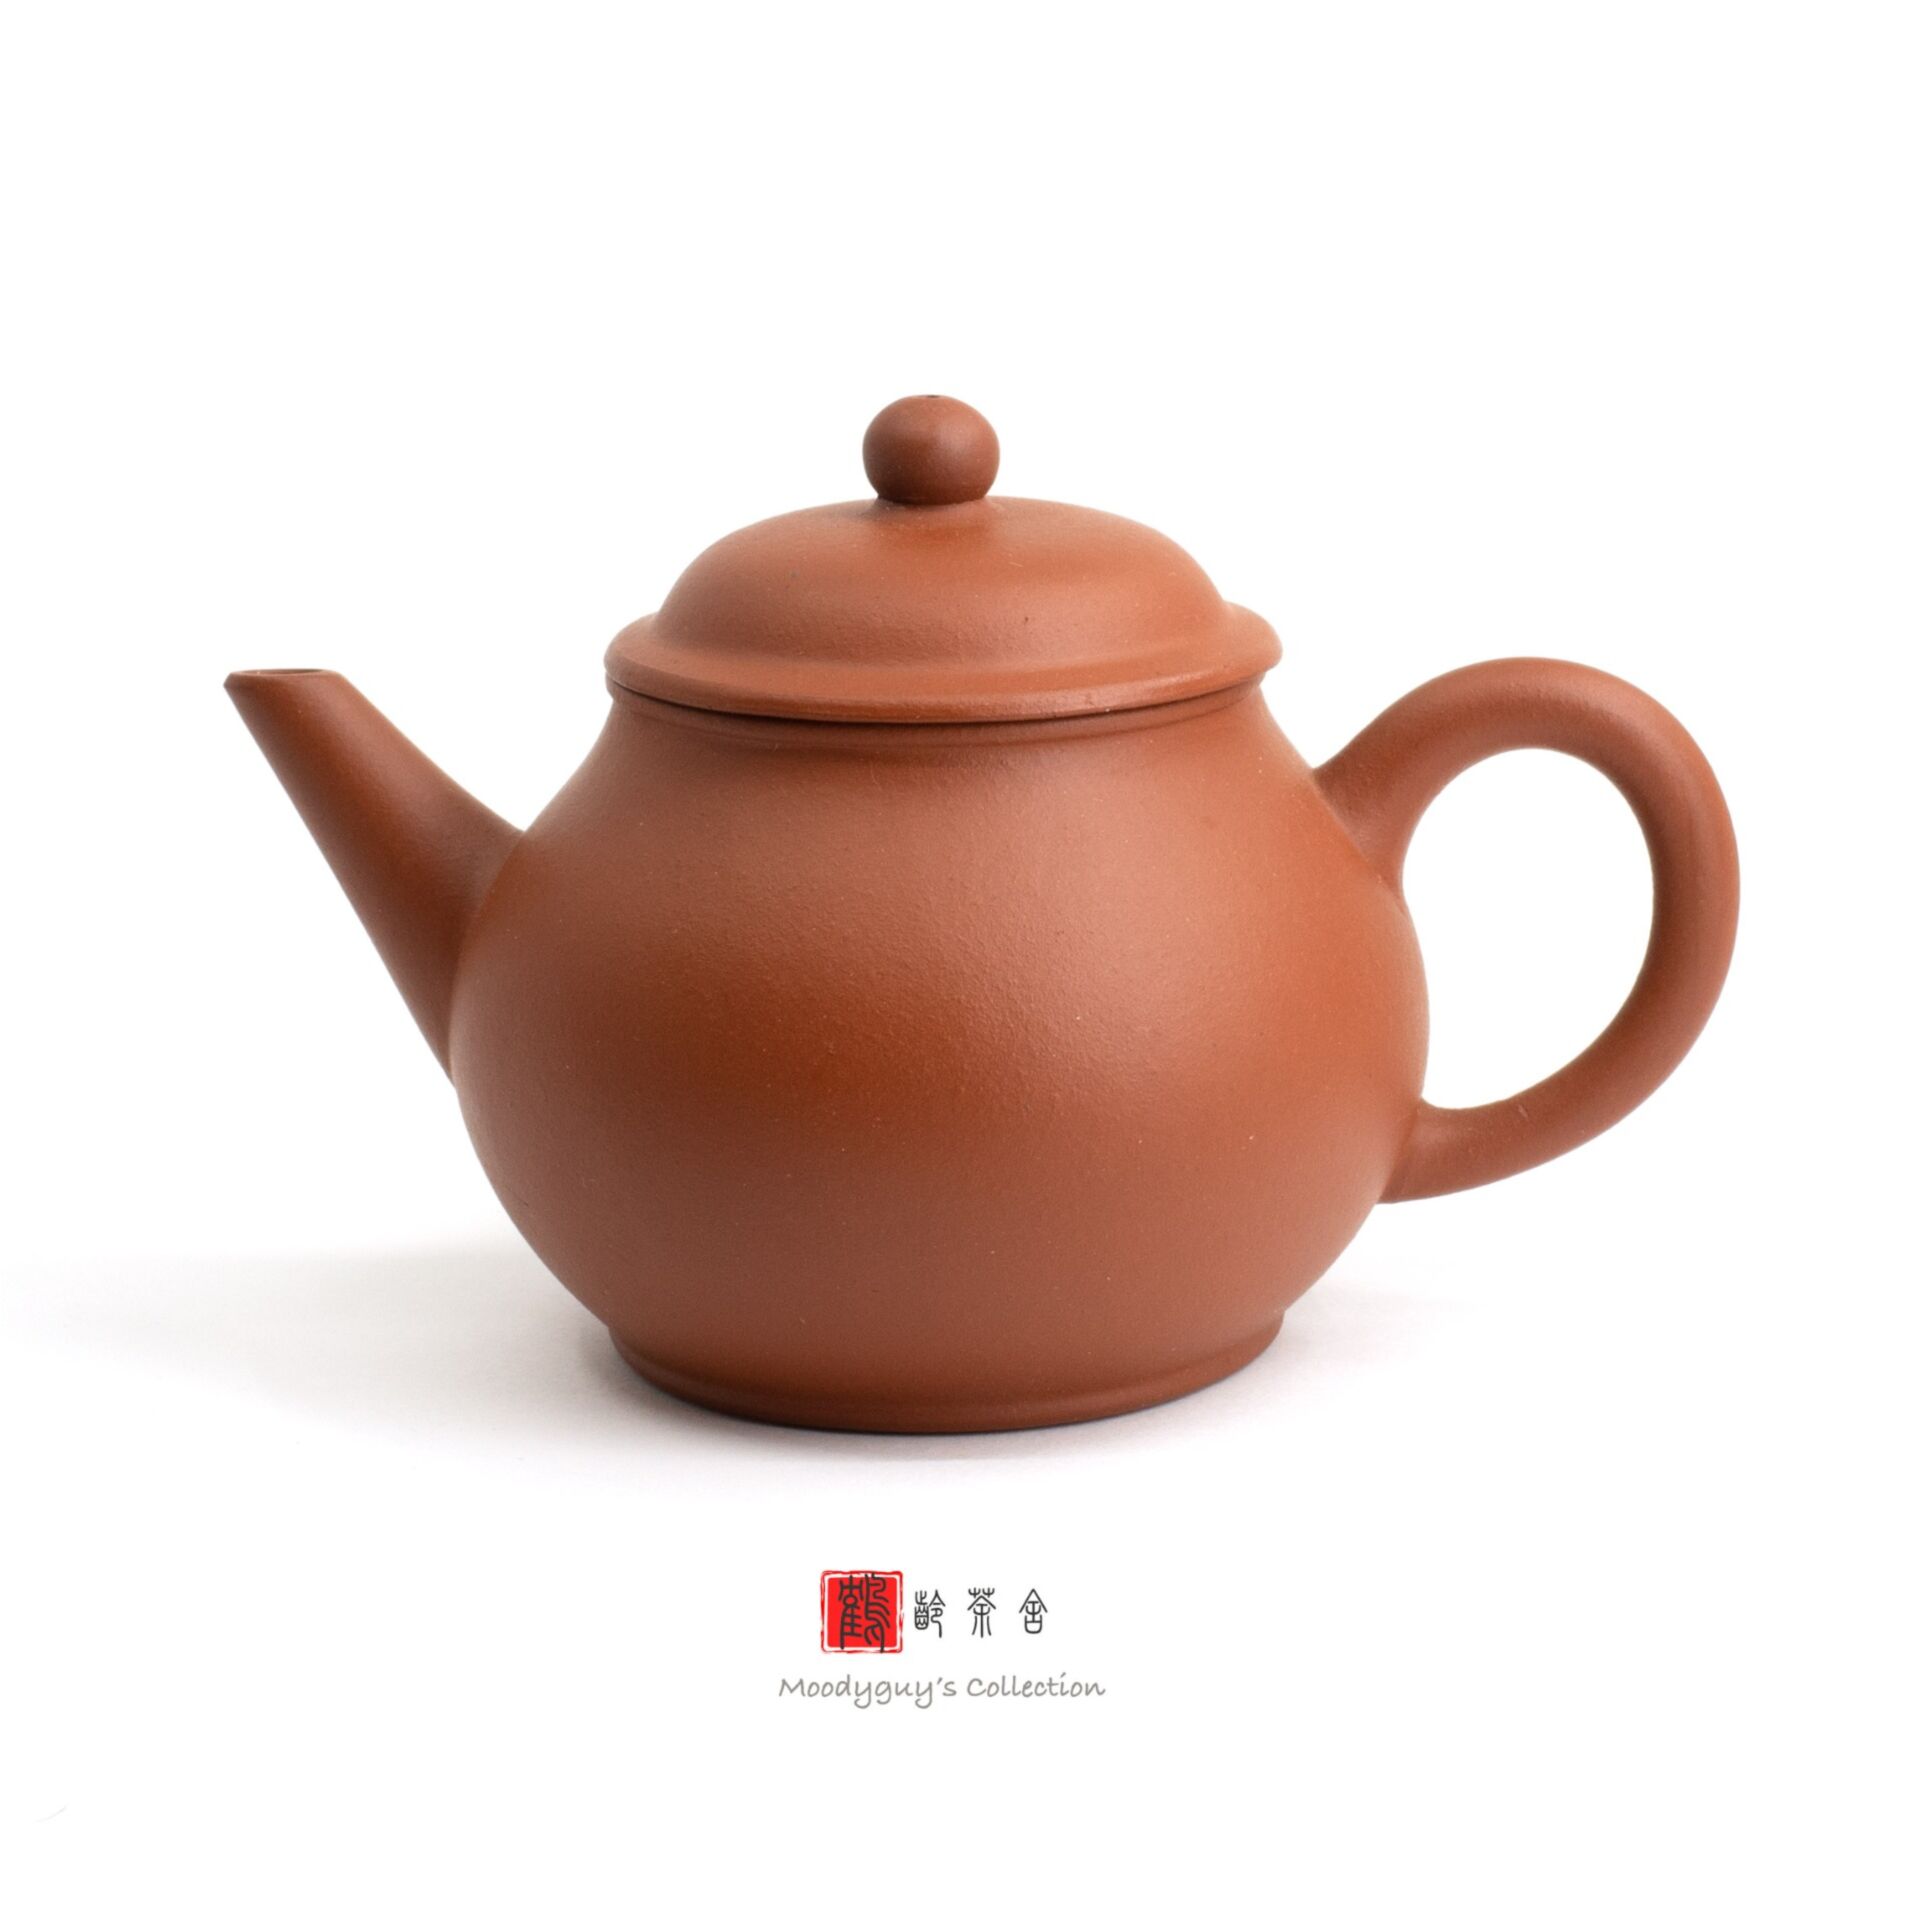 F1, Factory #1, Yixing teapot, Hong Ni, guava, 60s, 4-cup